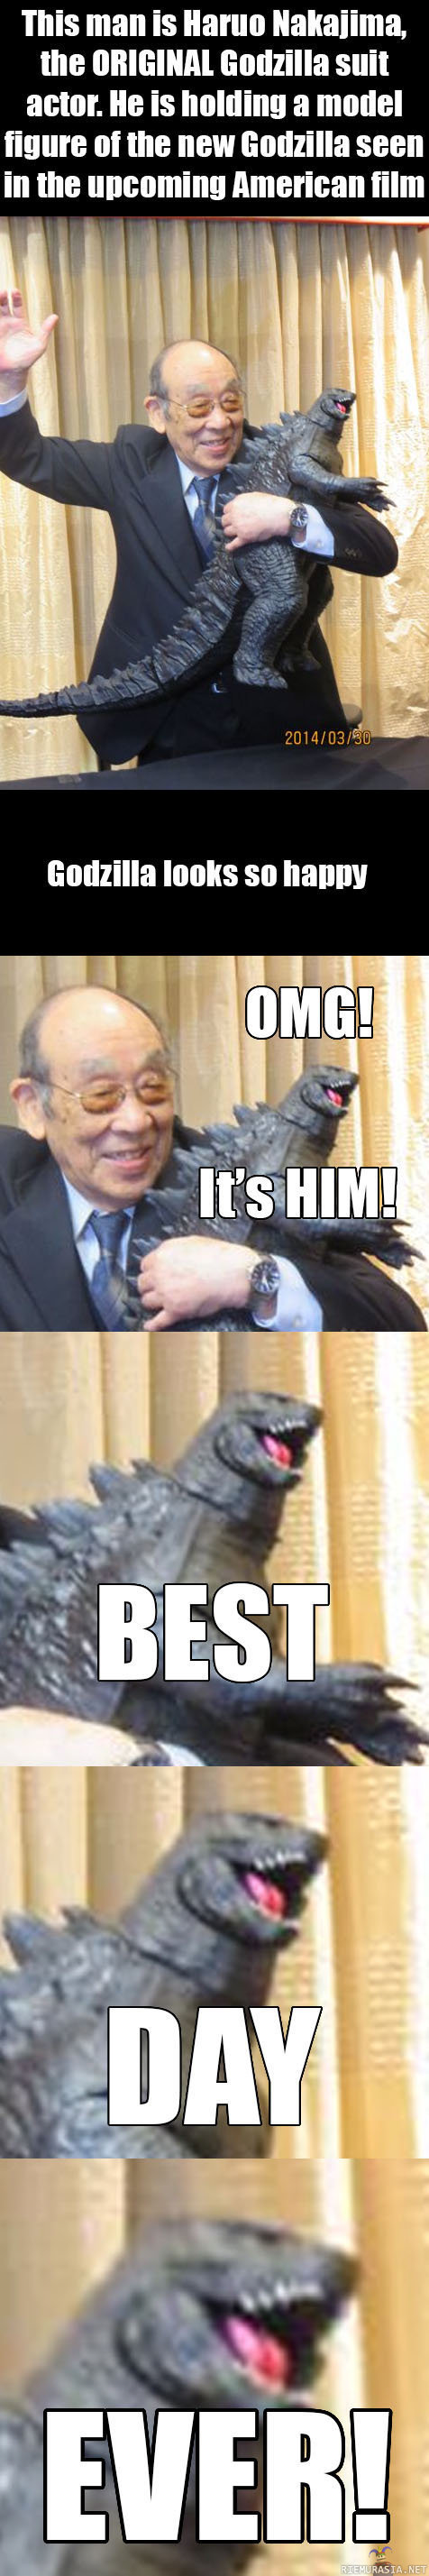 Godzillan parhain päivä